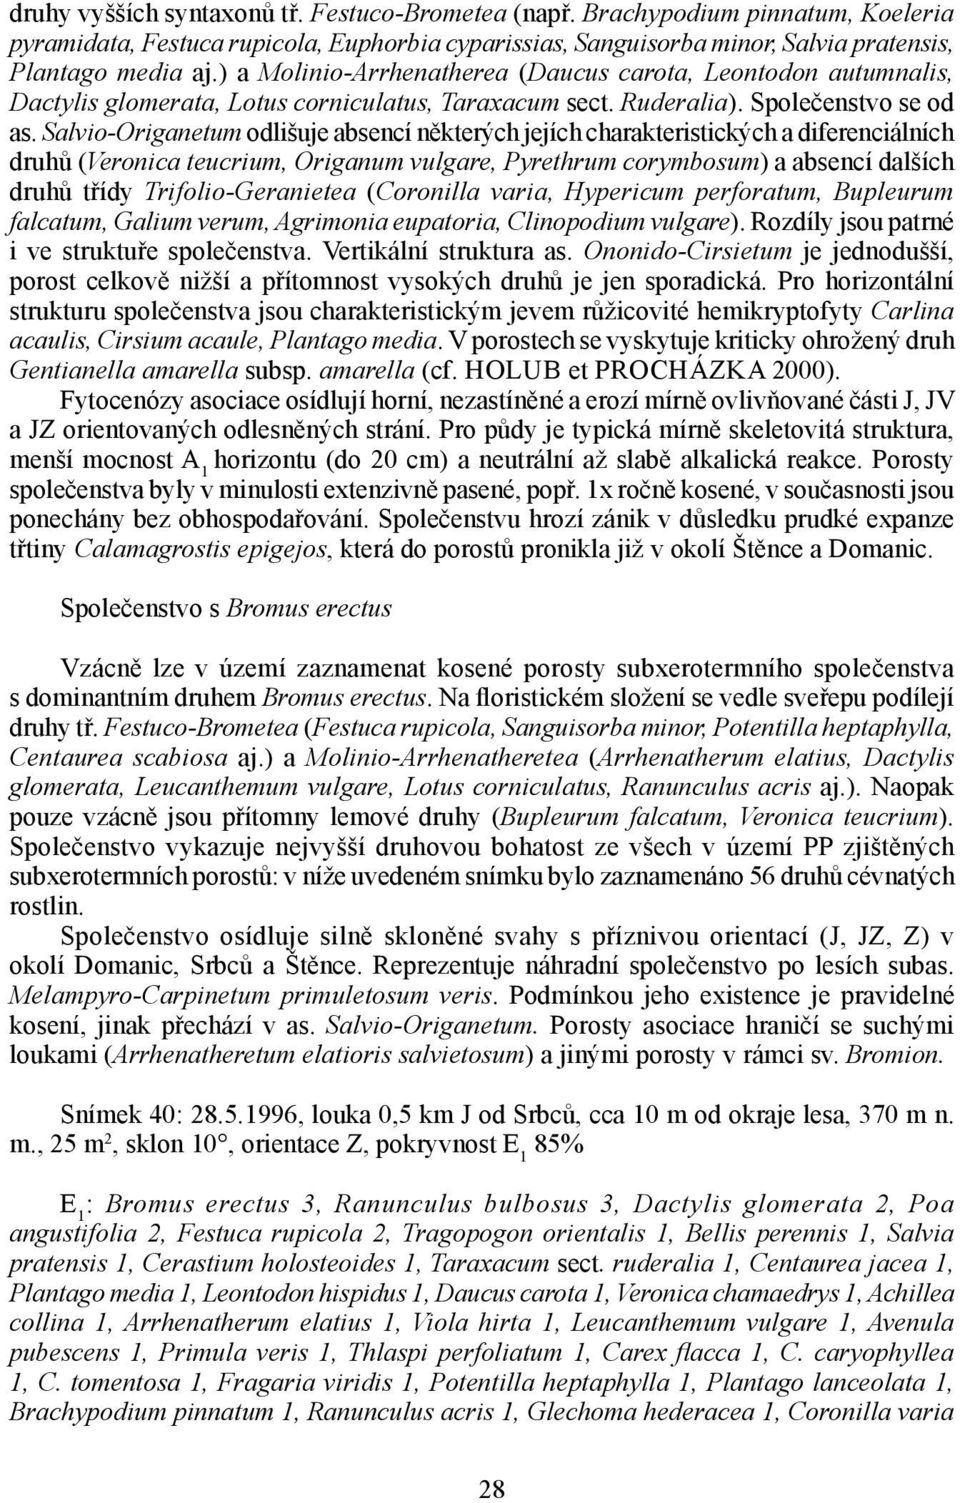 Salvio-Origanetum odlišuje absencí některých jejích charakteristických a diferenciálních druhů (Veronica teucrium, Origanum vulgare, Pyrethrum corymbosum) a absencí dalších druhů třídy